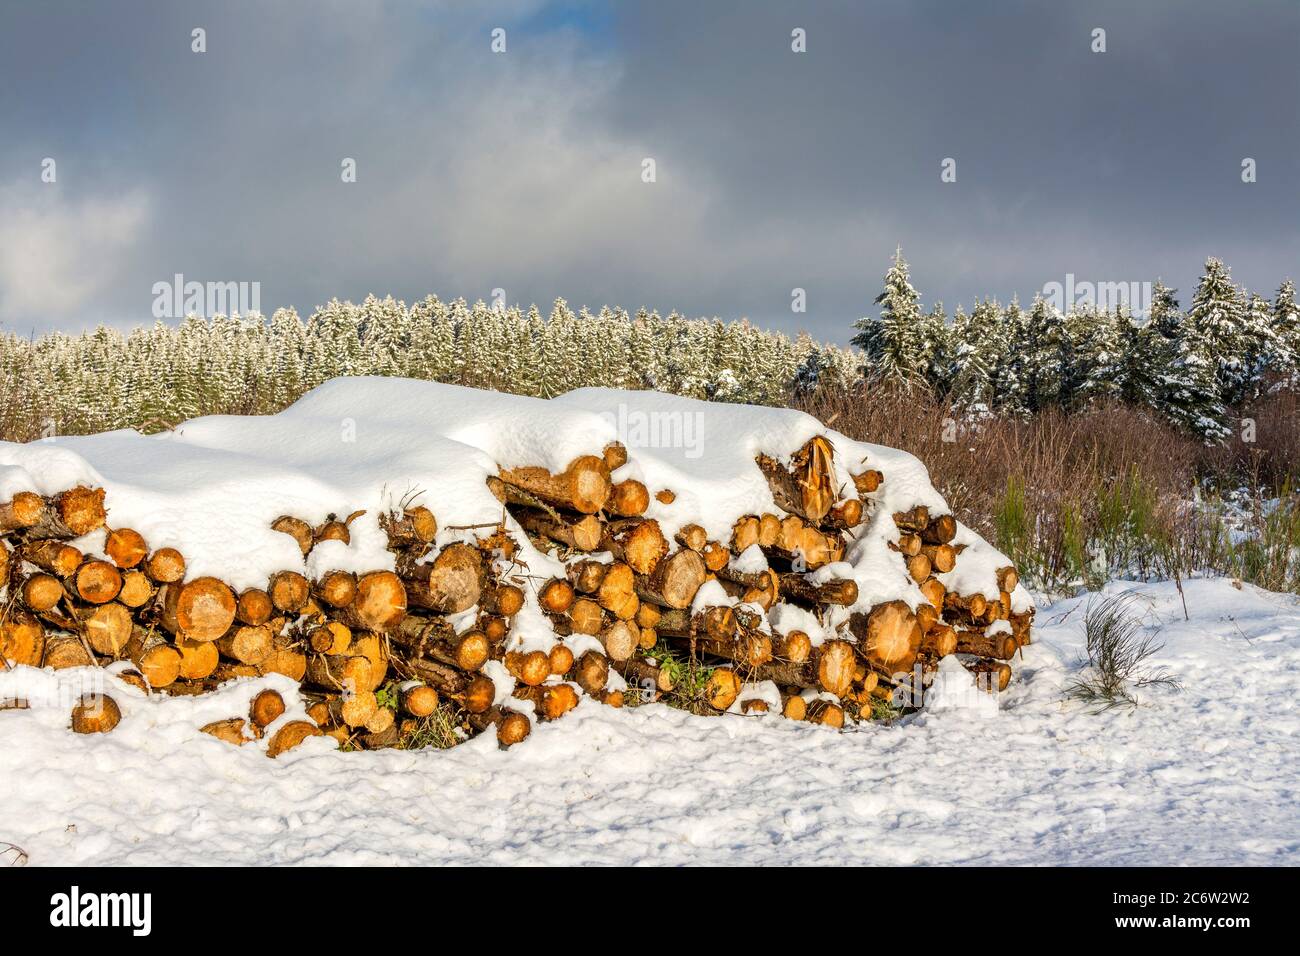 Piles of logs,Trees cut down. Natural Regional Park of Livradois Forez, Puy de Dome, Auvergne Rhone Alpes, France Stock Photo